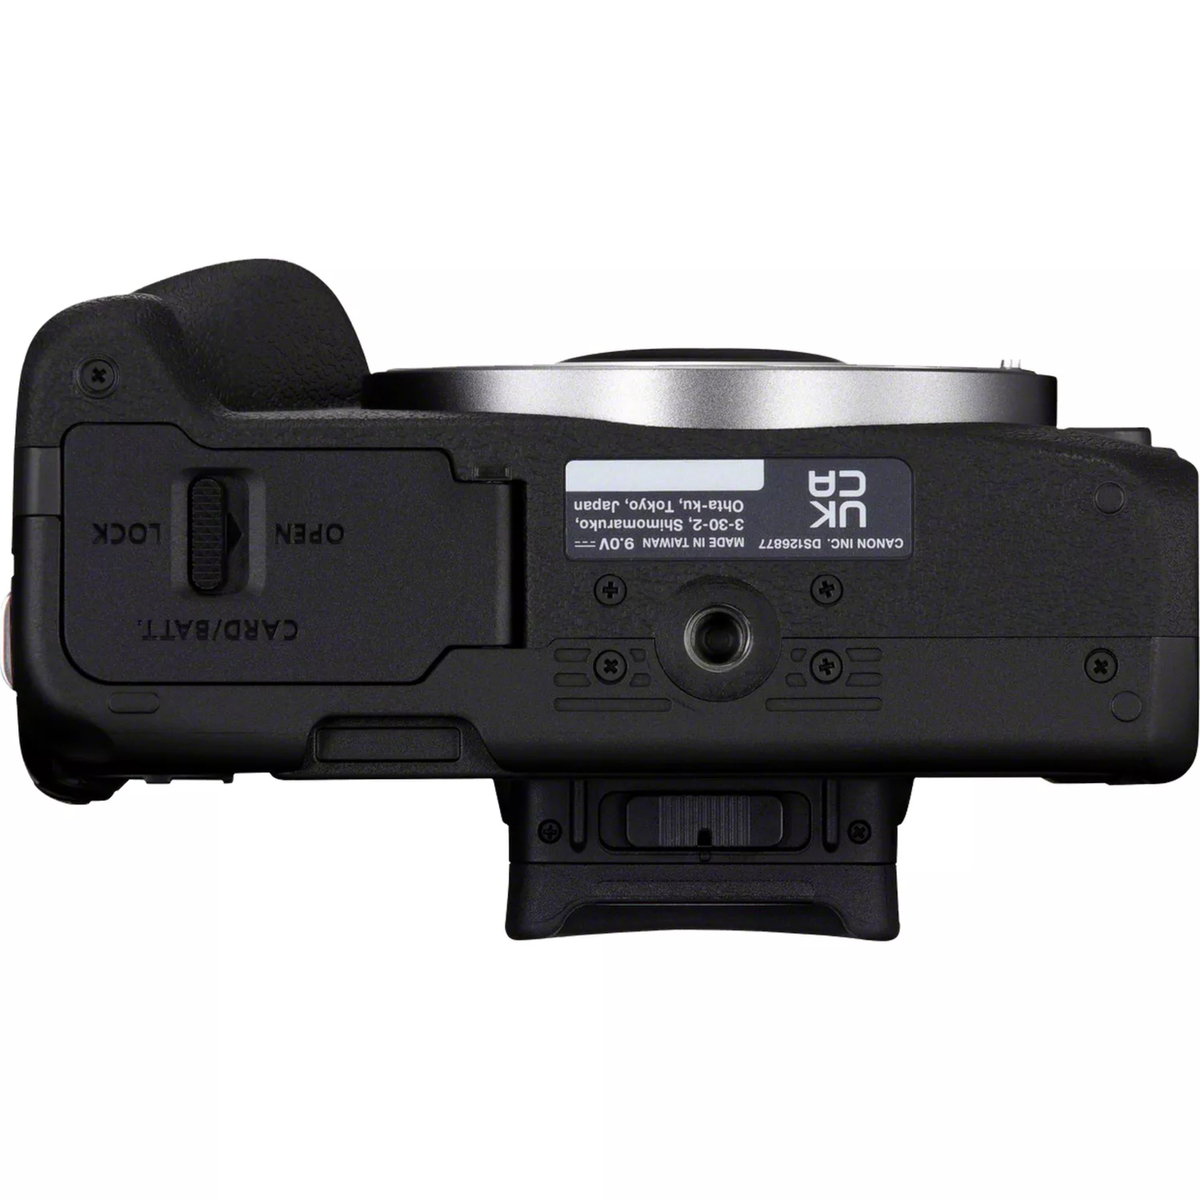 مجموعة أدوات إنشاء محتوى الكاميرا بدون مرآة EOS R50 من Canon بدقة 24.2 ميجابكسل مع RF-S، مقاس 18-45 مم، وعدسة IS STM